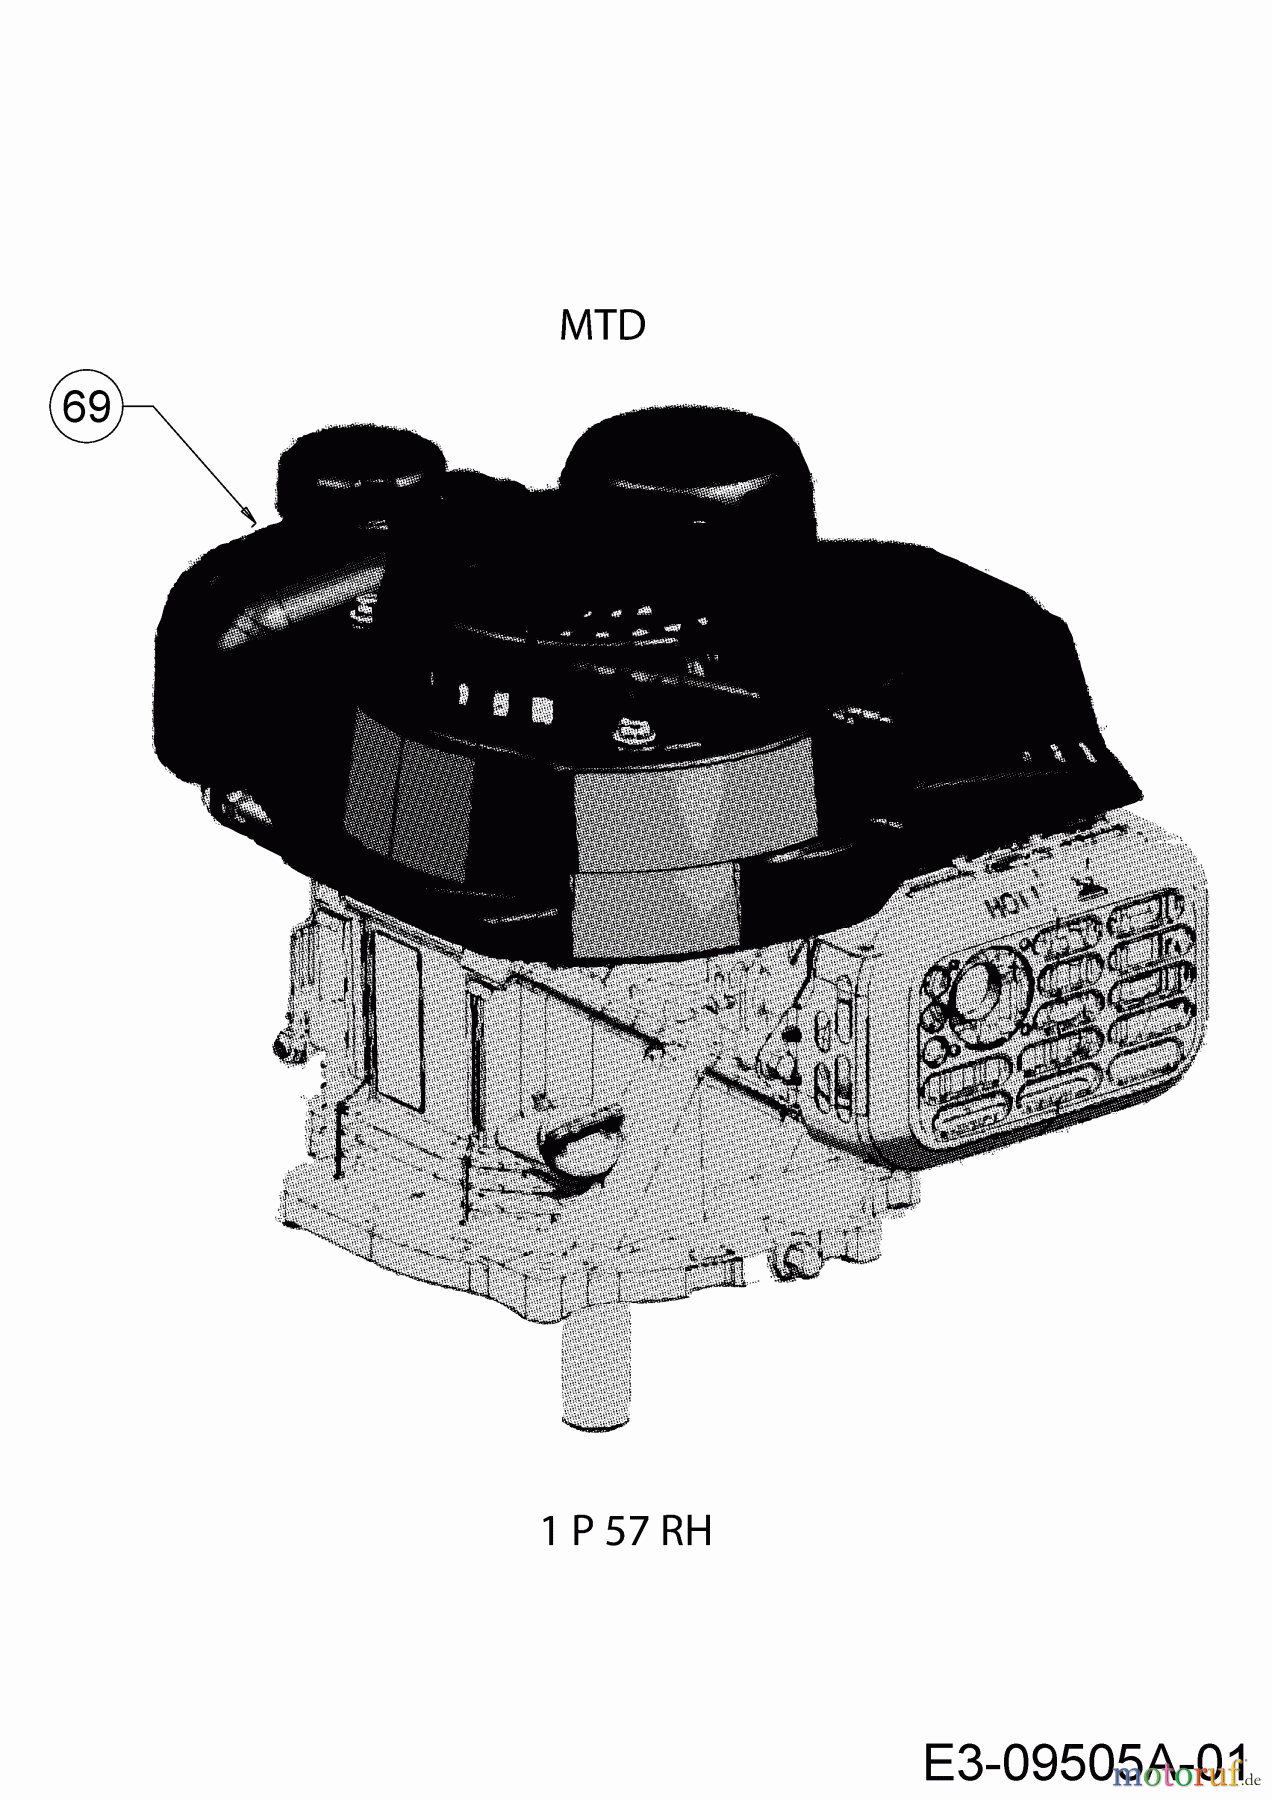  MTD Motormäher DL 46 P 11A-J1SJ677  (2017) Motor MTD